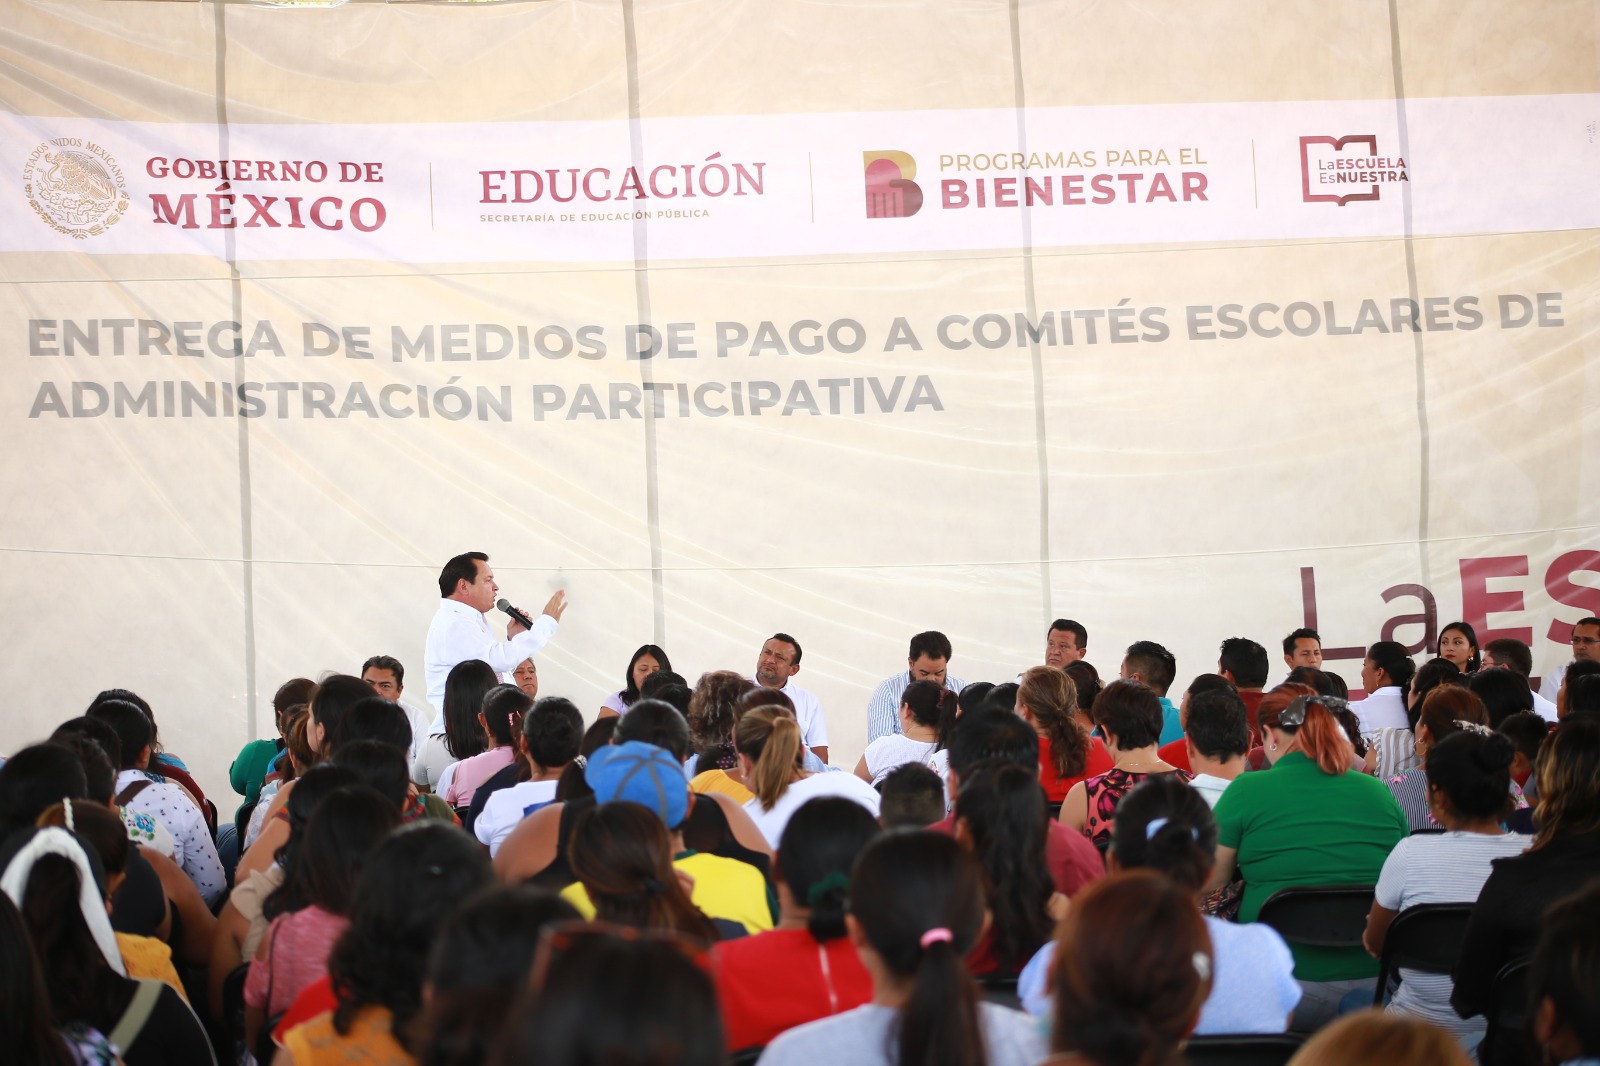 Alcaldes de varios municipios del estado de Yucatán acompañan al Delegado del Gobierno Federal en la entrega de recursos del programa "La Escuela es Nuestra".